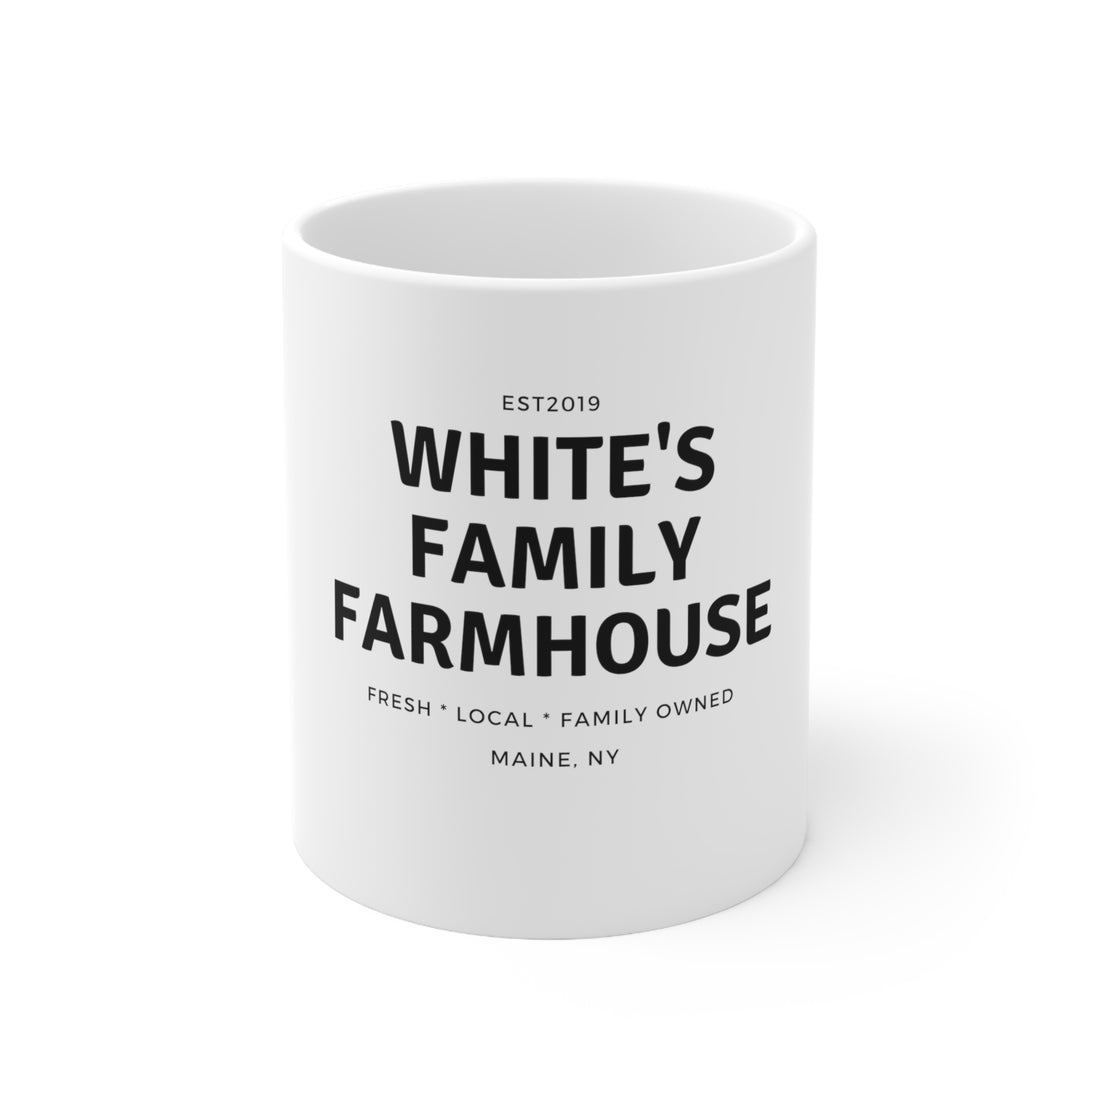 White's Family Farmhouse Ceramic Mug 11oz - White's Family Farmhouse 